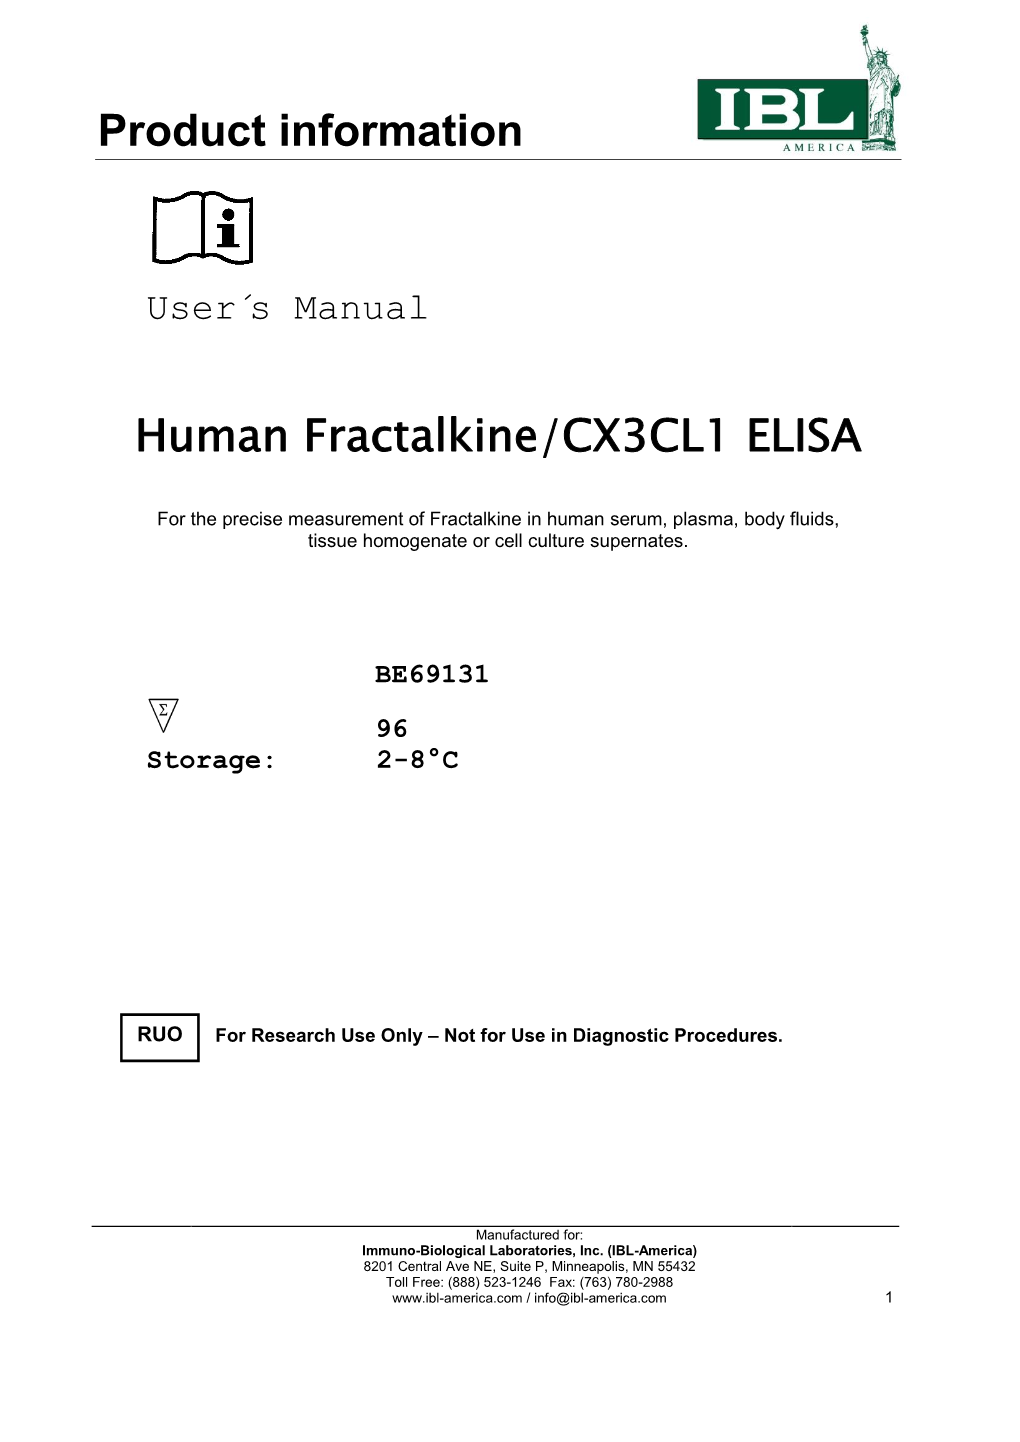 Product Information Human Fractalkine/CX3CL1 ELISA